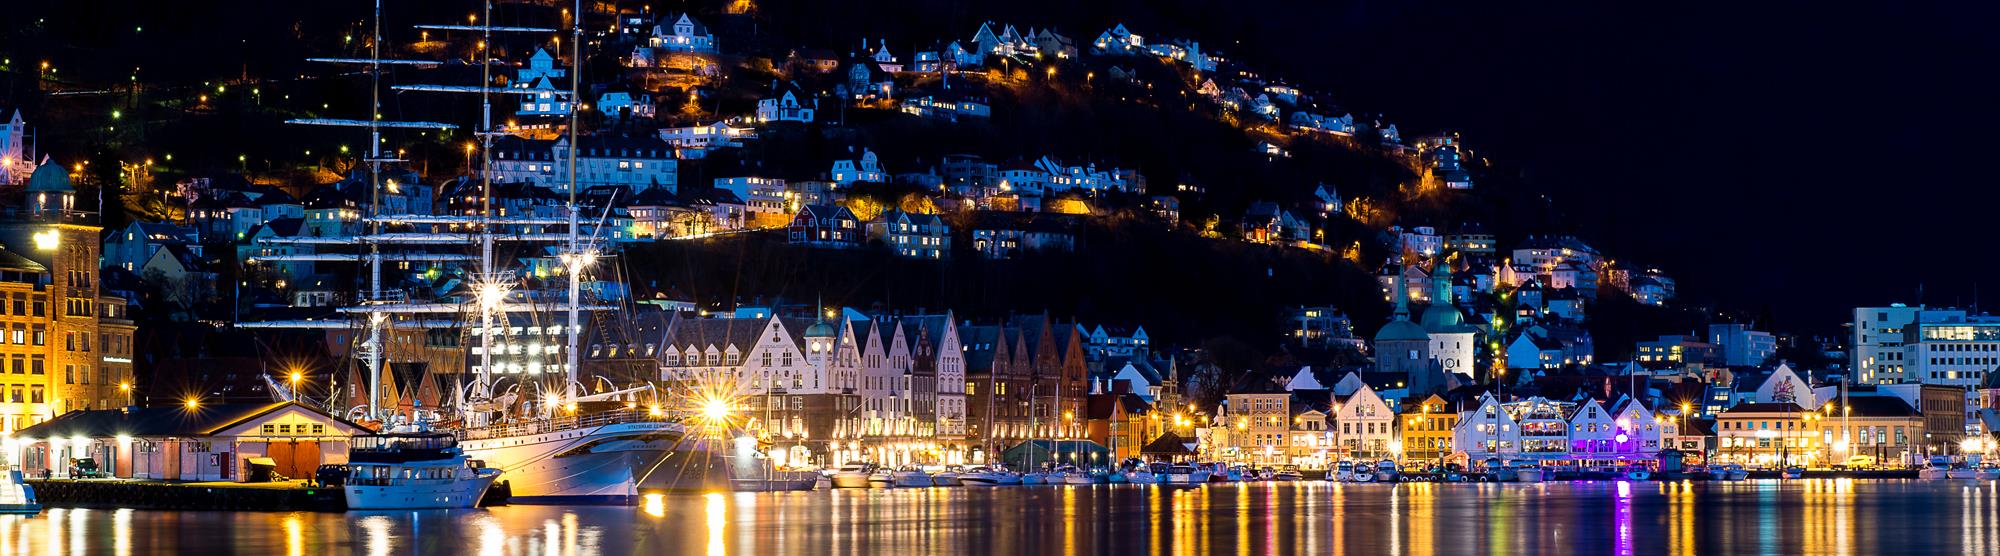 Bergens nightlife